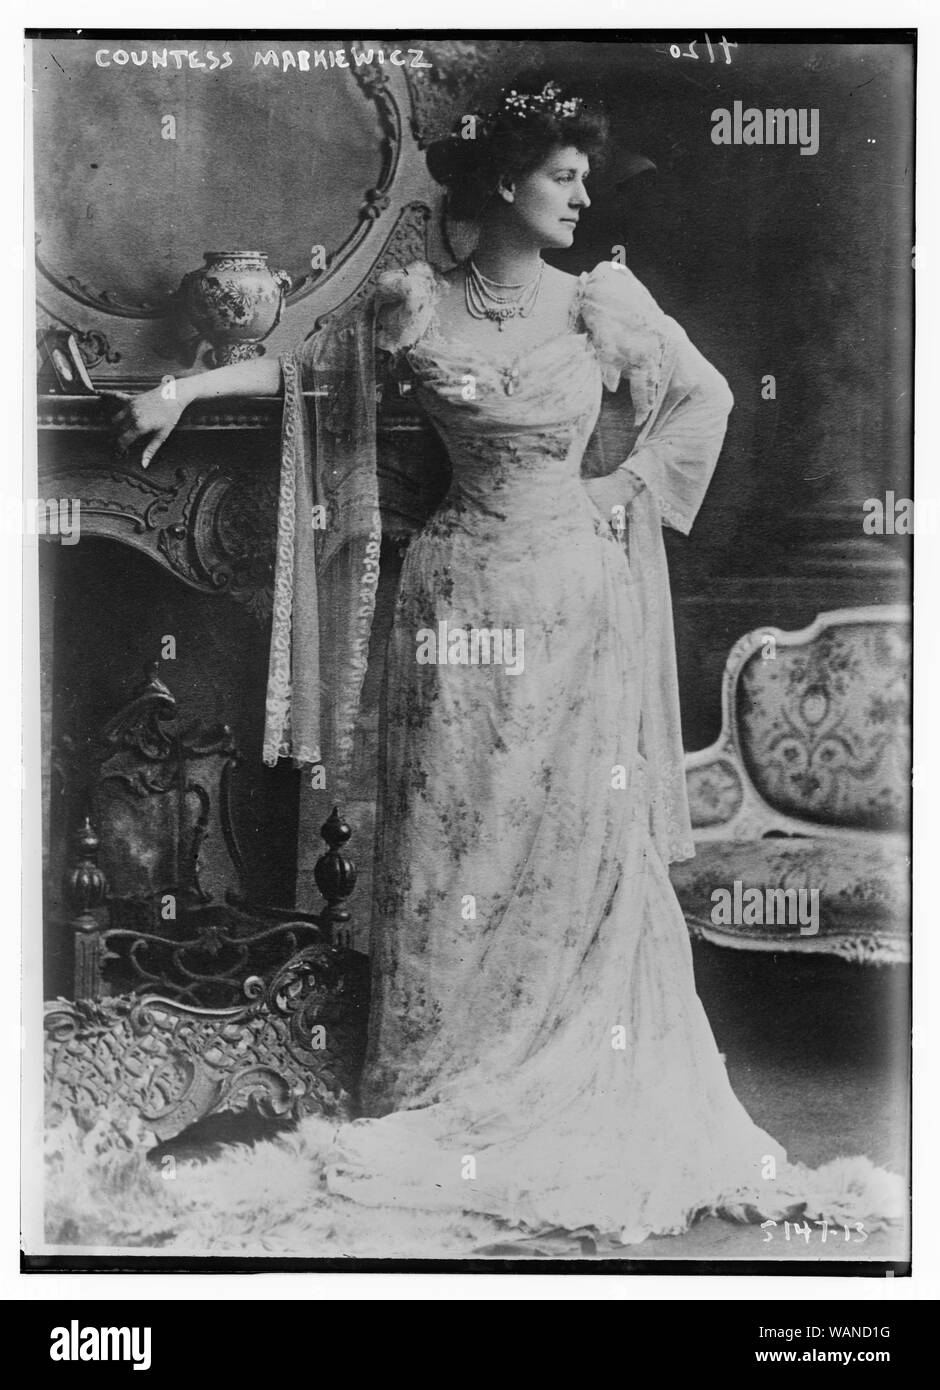 Countess Markiewicz Stock Photo